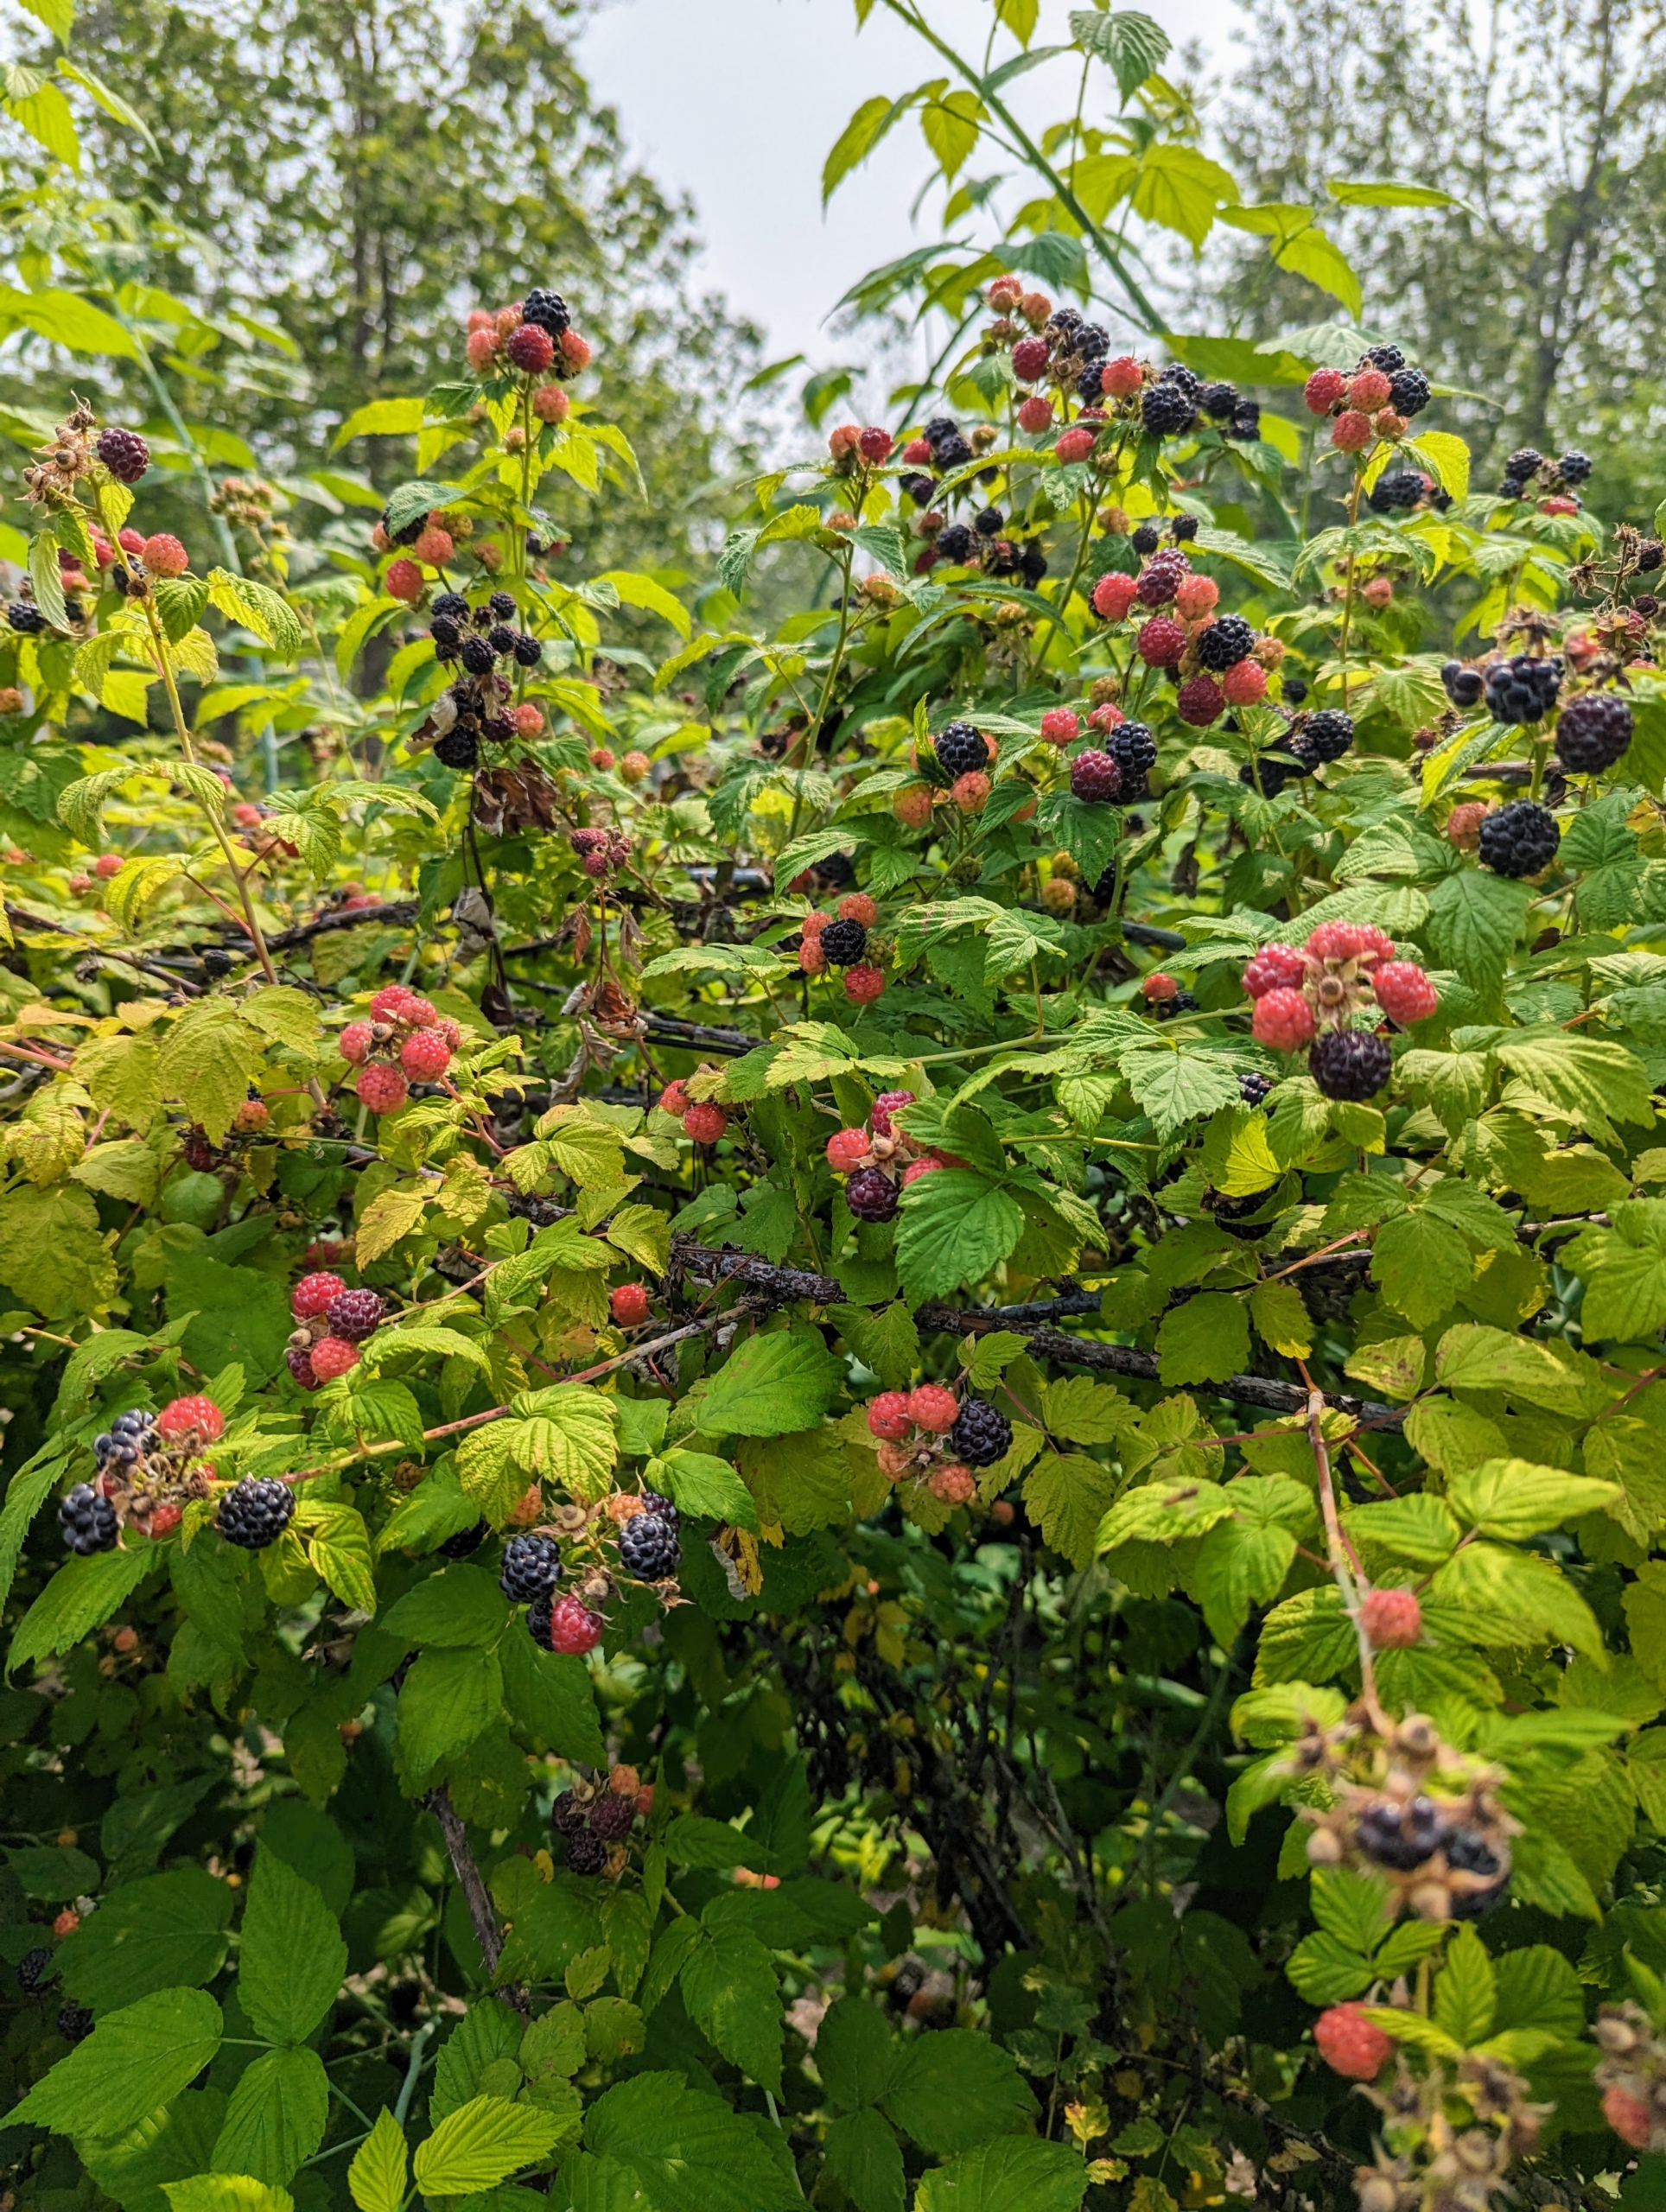 raspberries growing